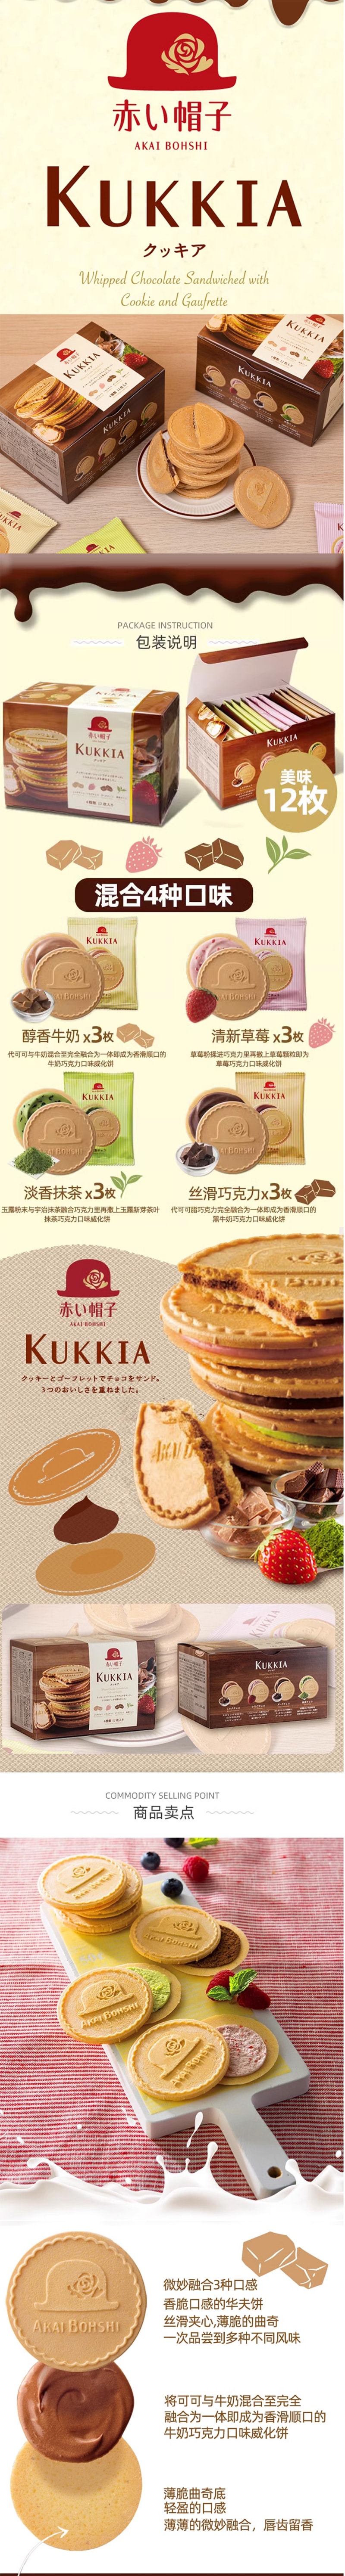 【日本直邮】AKAI BOHSHI红帽子 kukkia 法式薄饼什锦夹心饼干 4种口味12枚